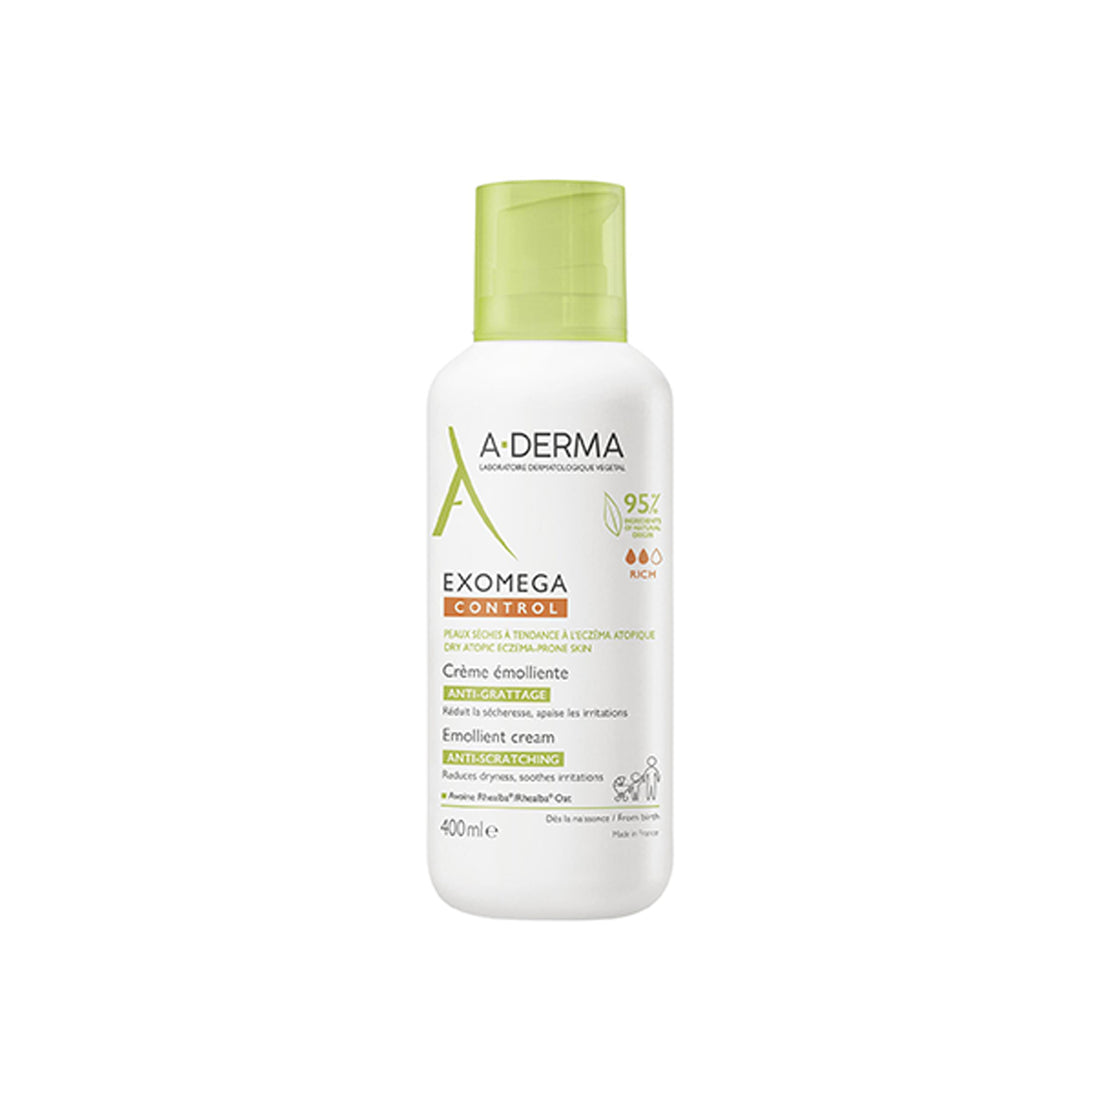 A-Derma Exomega Control Emollient Cream 400ml (13.53fl oz)